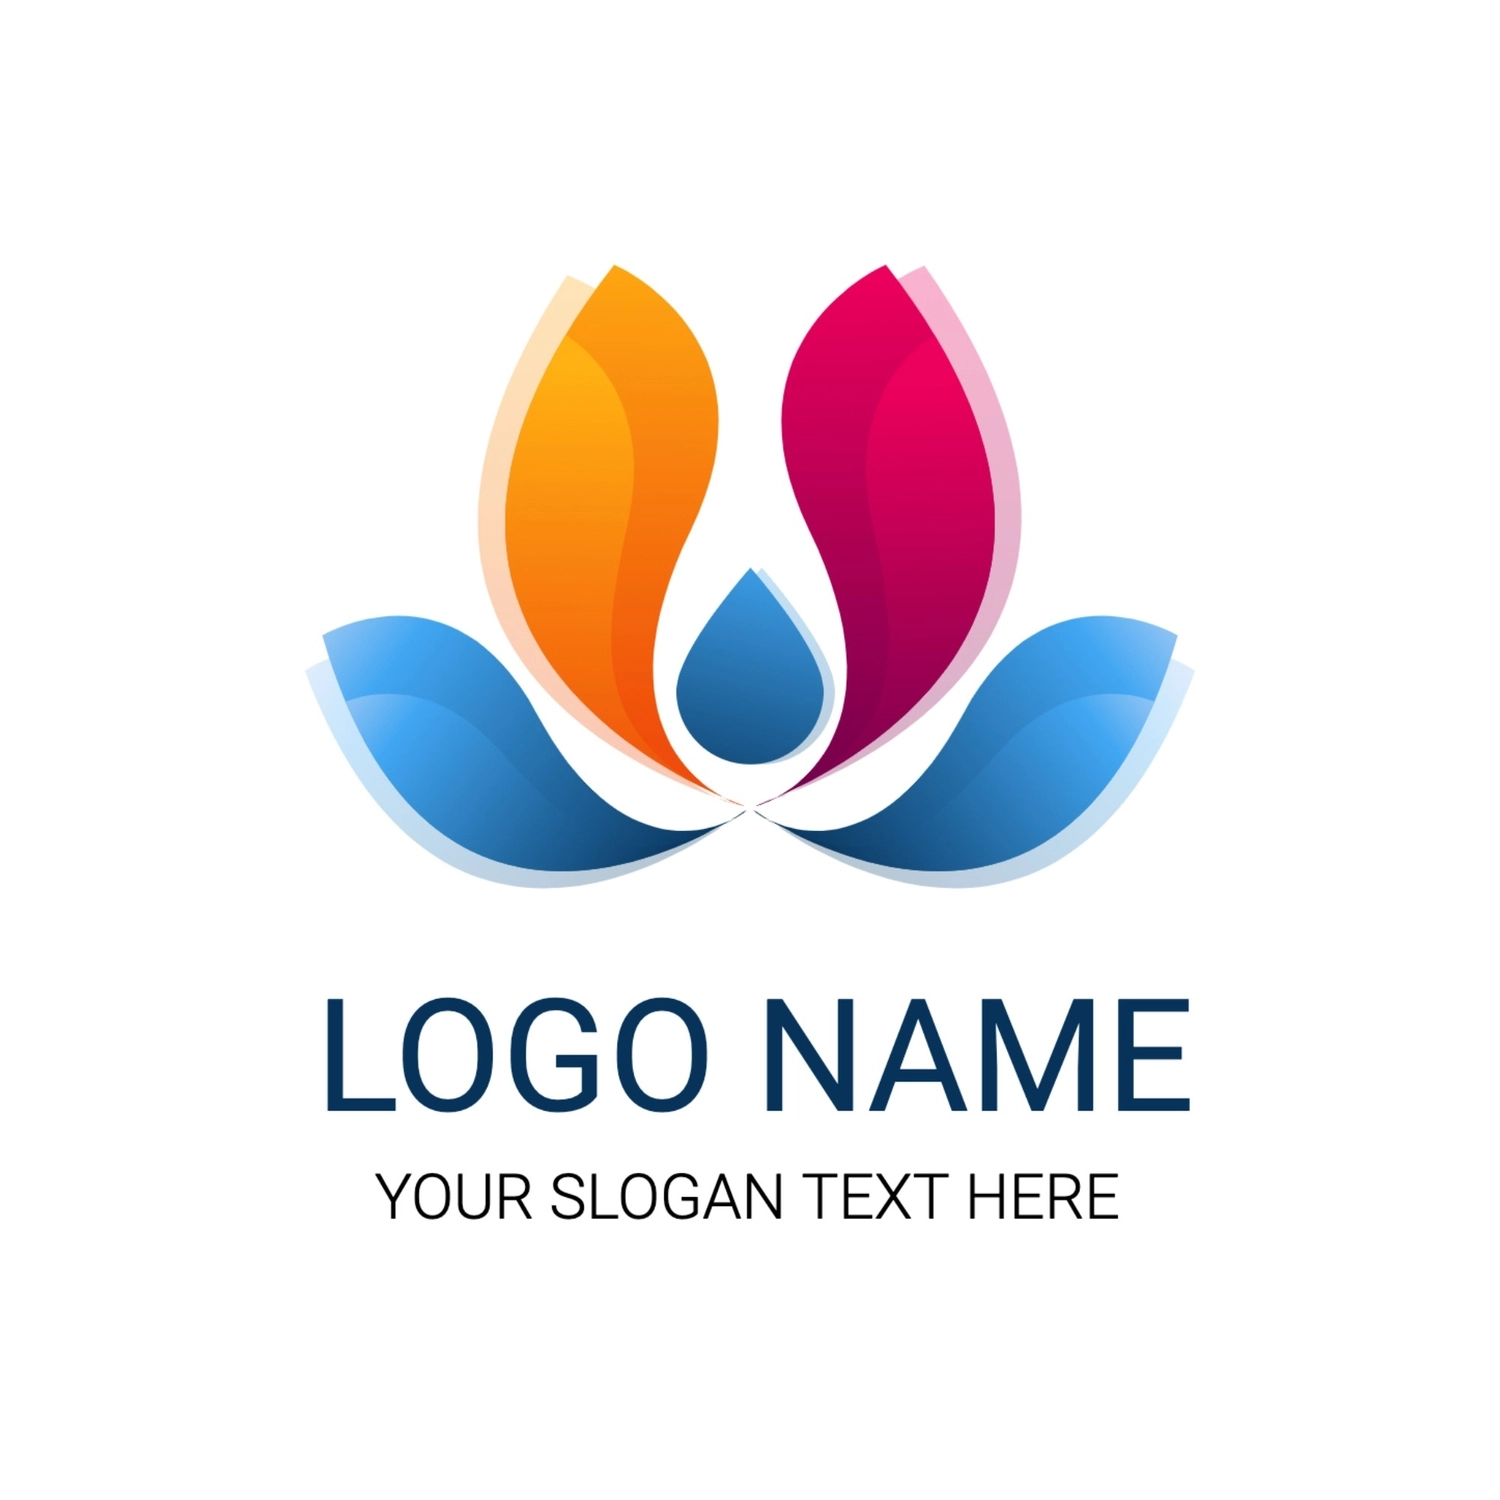 三色の抽象的なロゴ, ロゴ, ロゴマーク, ロゴタイプ, ロゴテンプレート